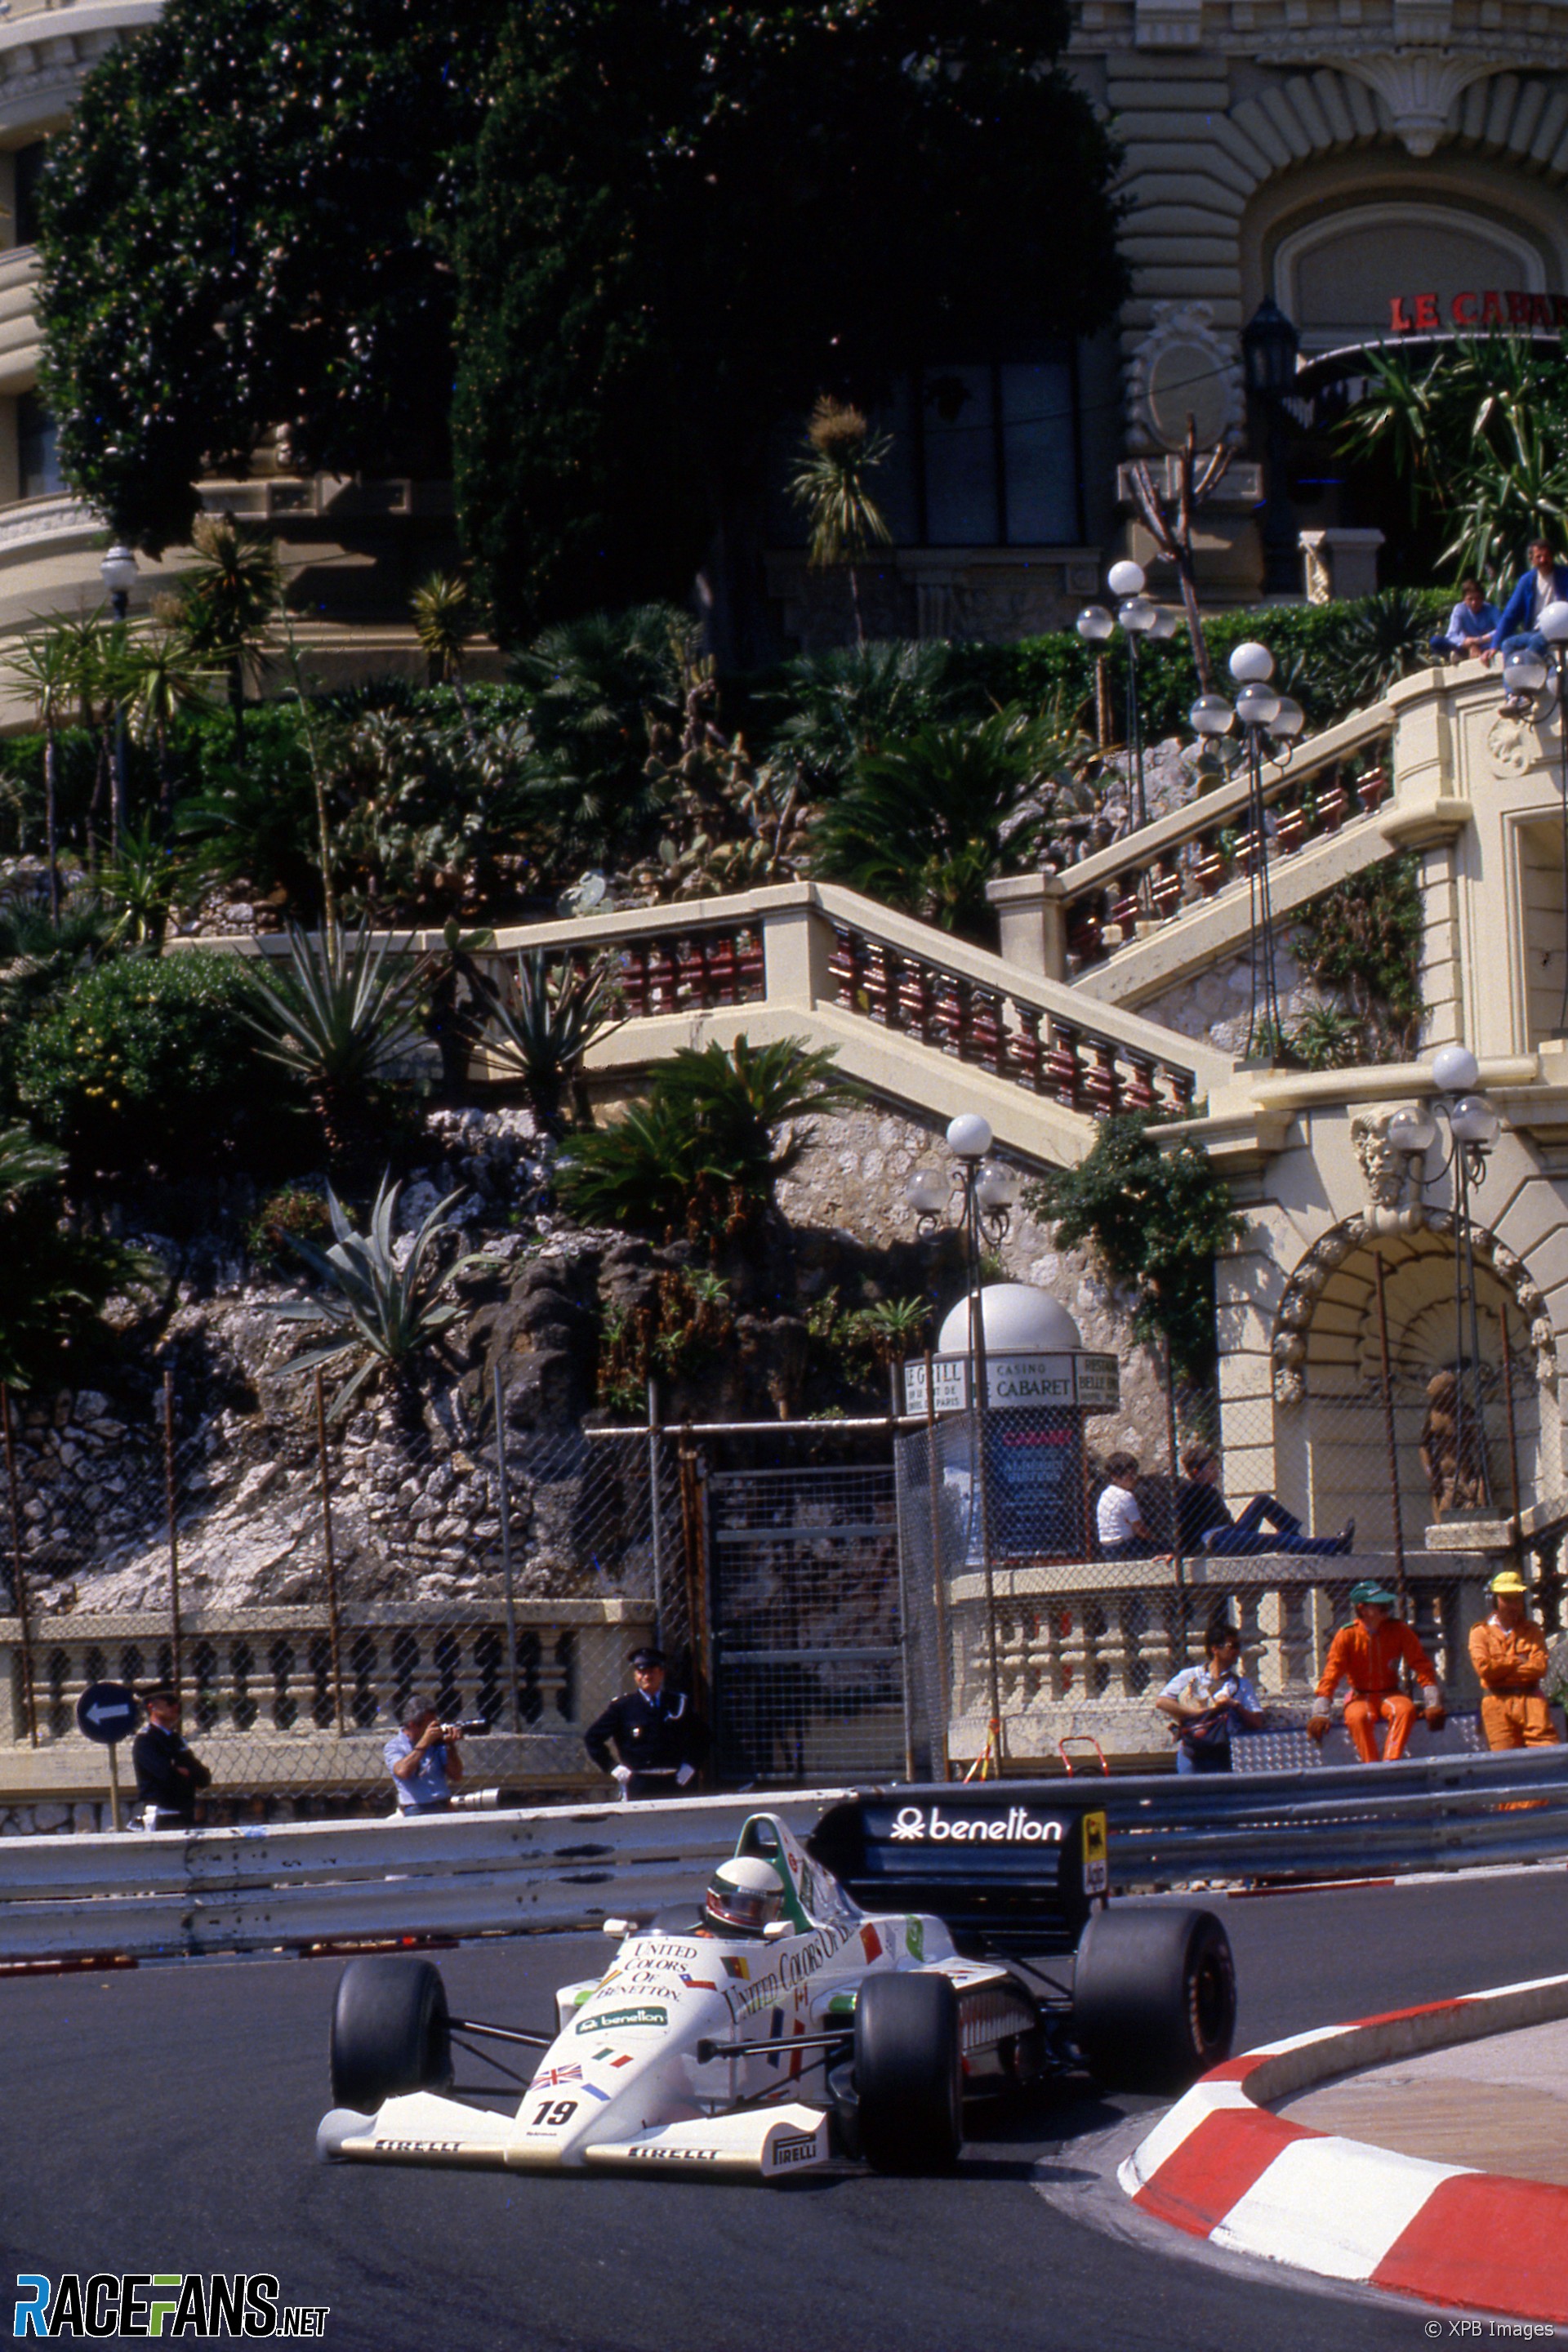 Teo Fabi, Toleman, Monaco, 1985